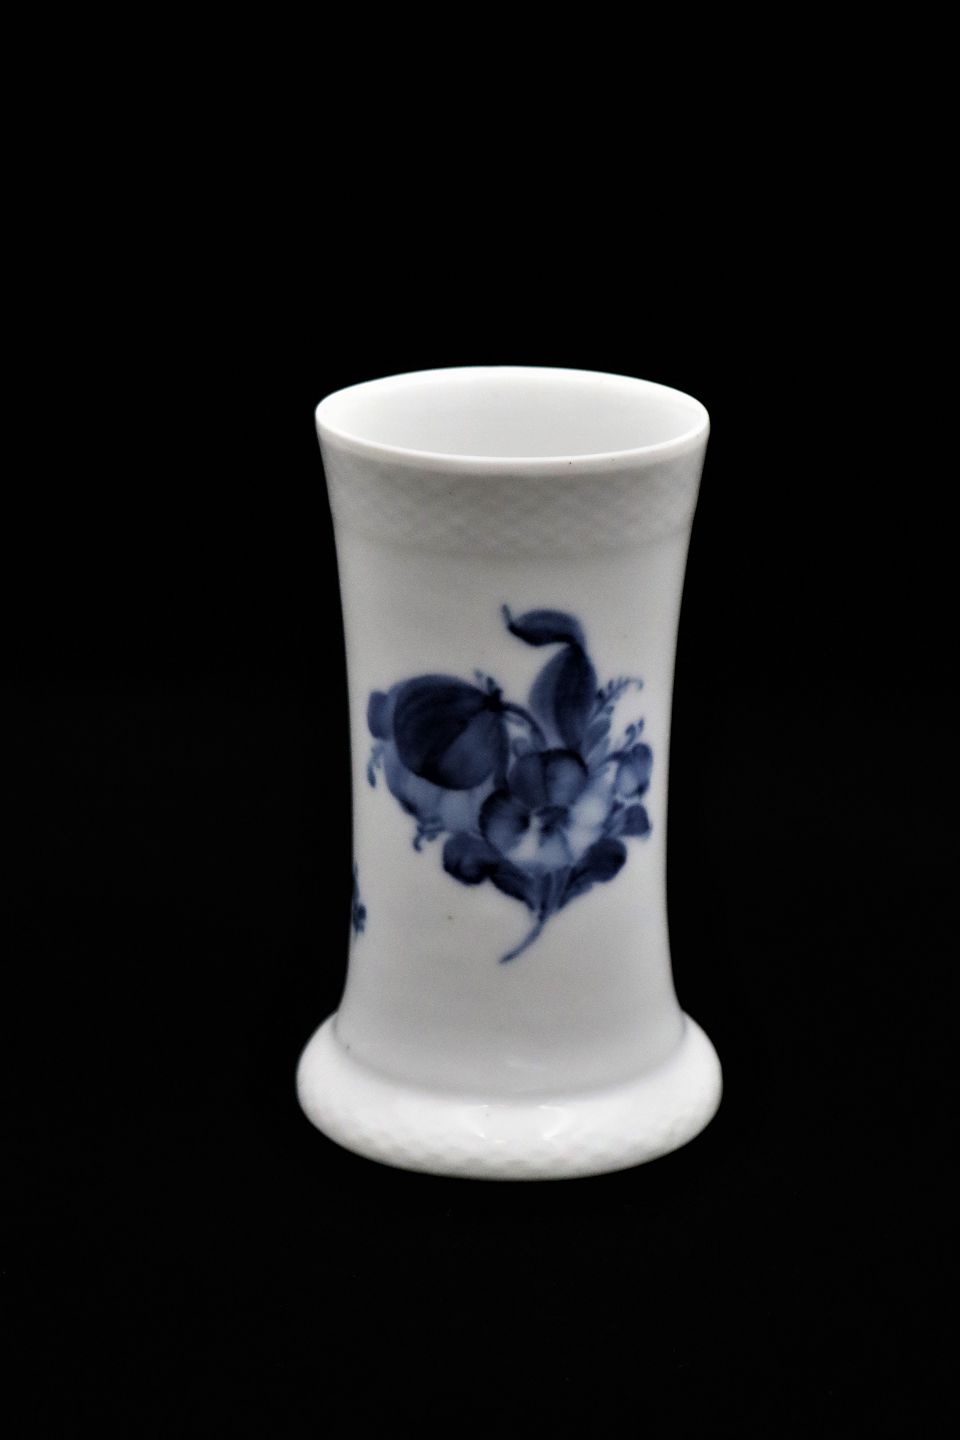 K&Co - Vase in Blue Flower, Braided from Royal Copenhagen. * 10/8259.